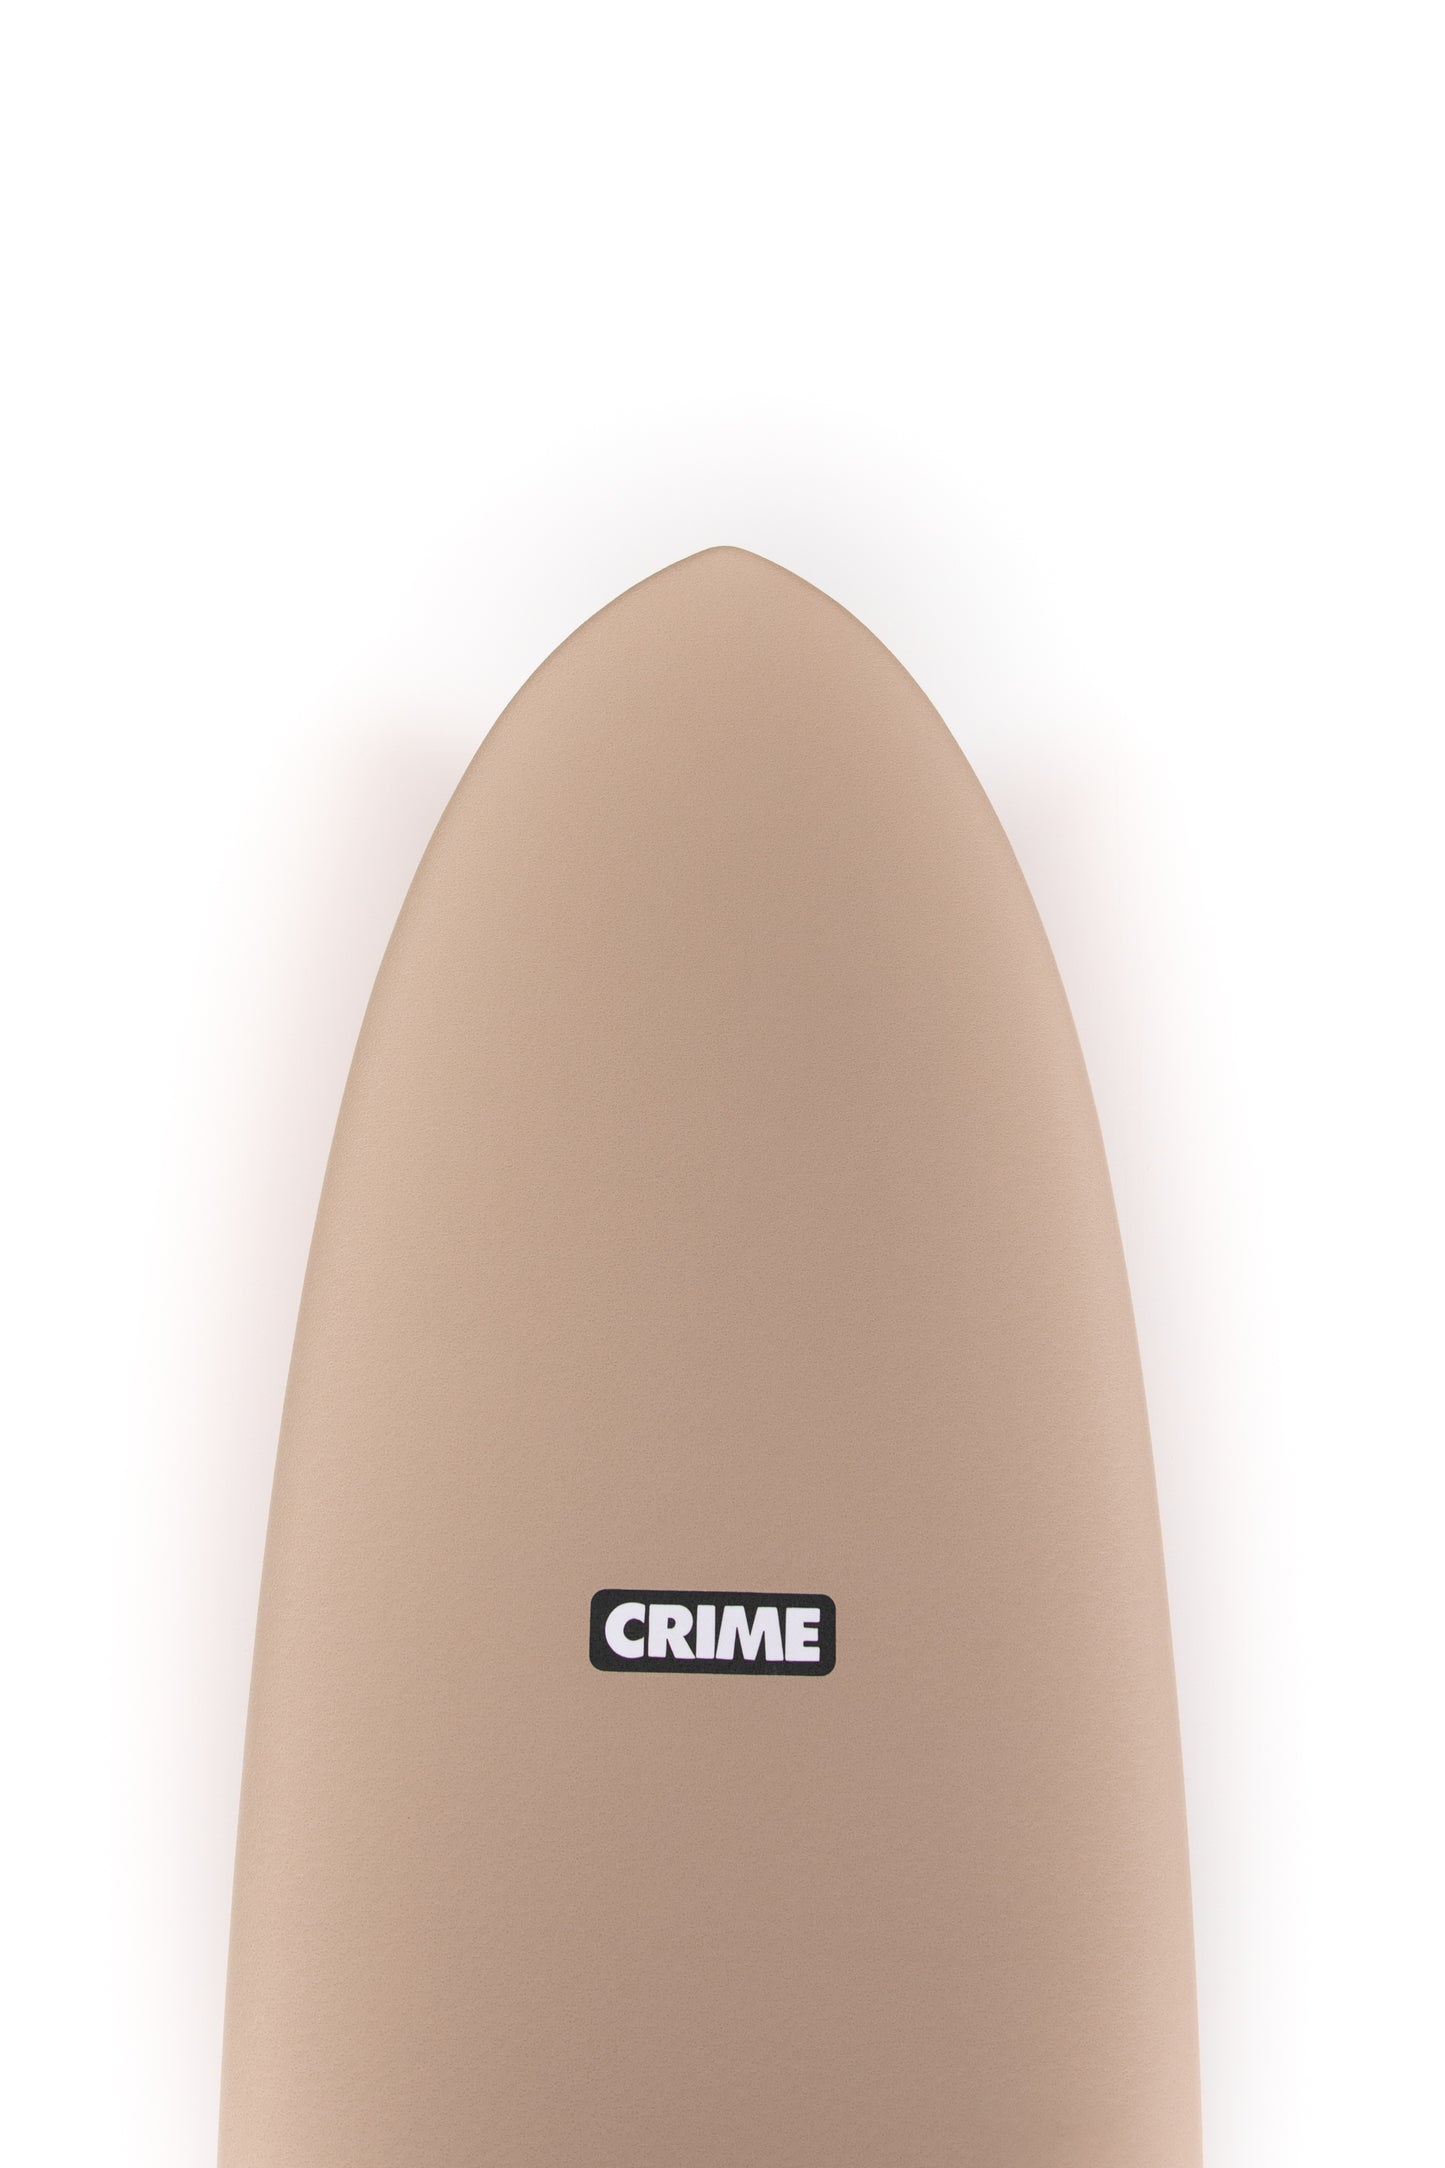 
                  
                    Pukas-Surf-Shop-Crime-Surfboards-Dylan-Graves-Sand-Red-7_1_
                  
                